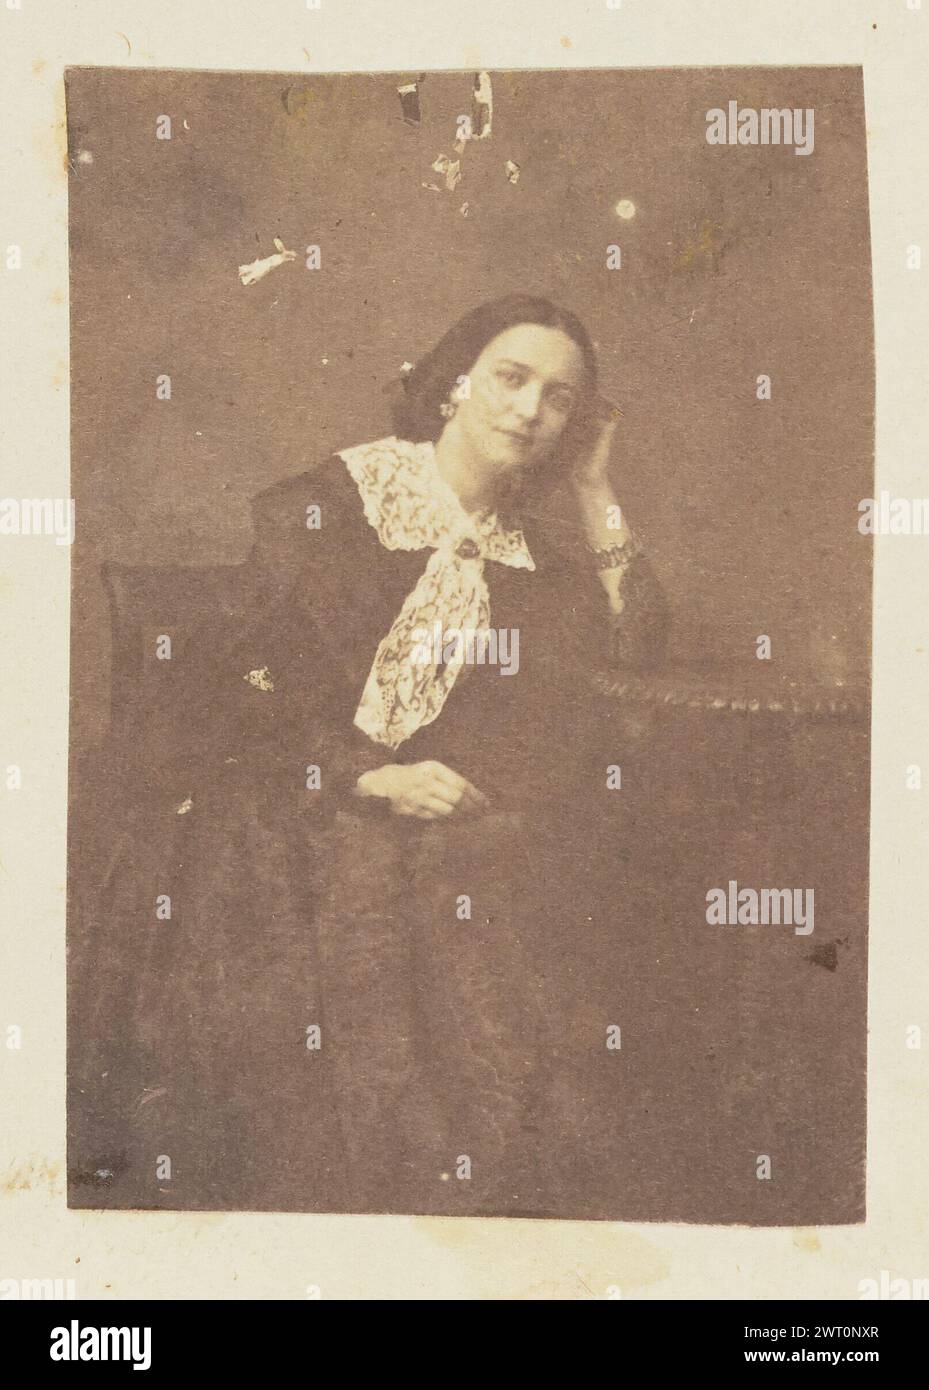 Portrait d'une femme. Jakob Höflinger, photographe (Suisse, 1819 - 1898) vers 1853–1860 portrait d'une femme assise reposant sa tête dans sa main. Son coude repose sur une petite table. Sa robe a un large col en dentelle. Banque D'Images